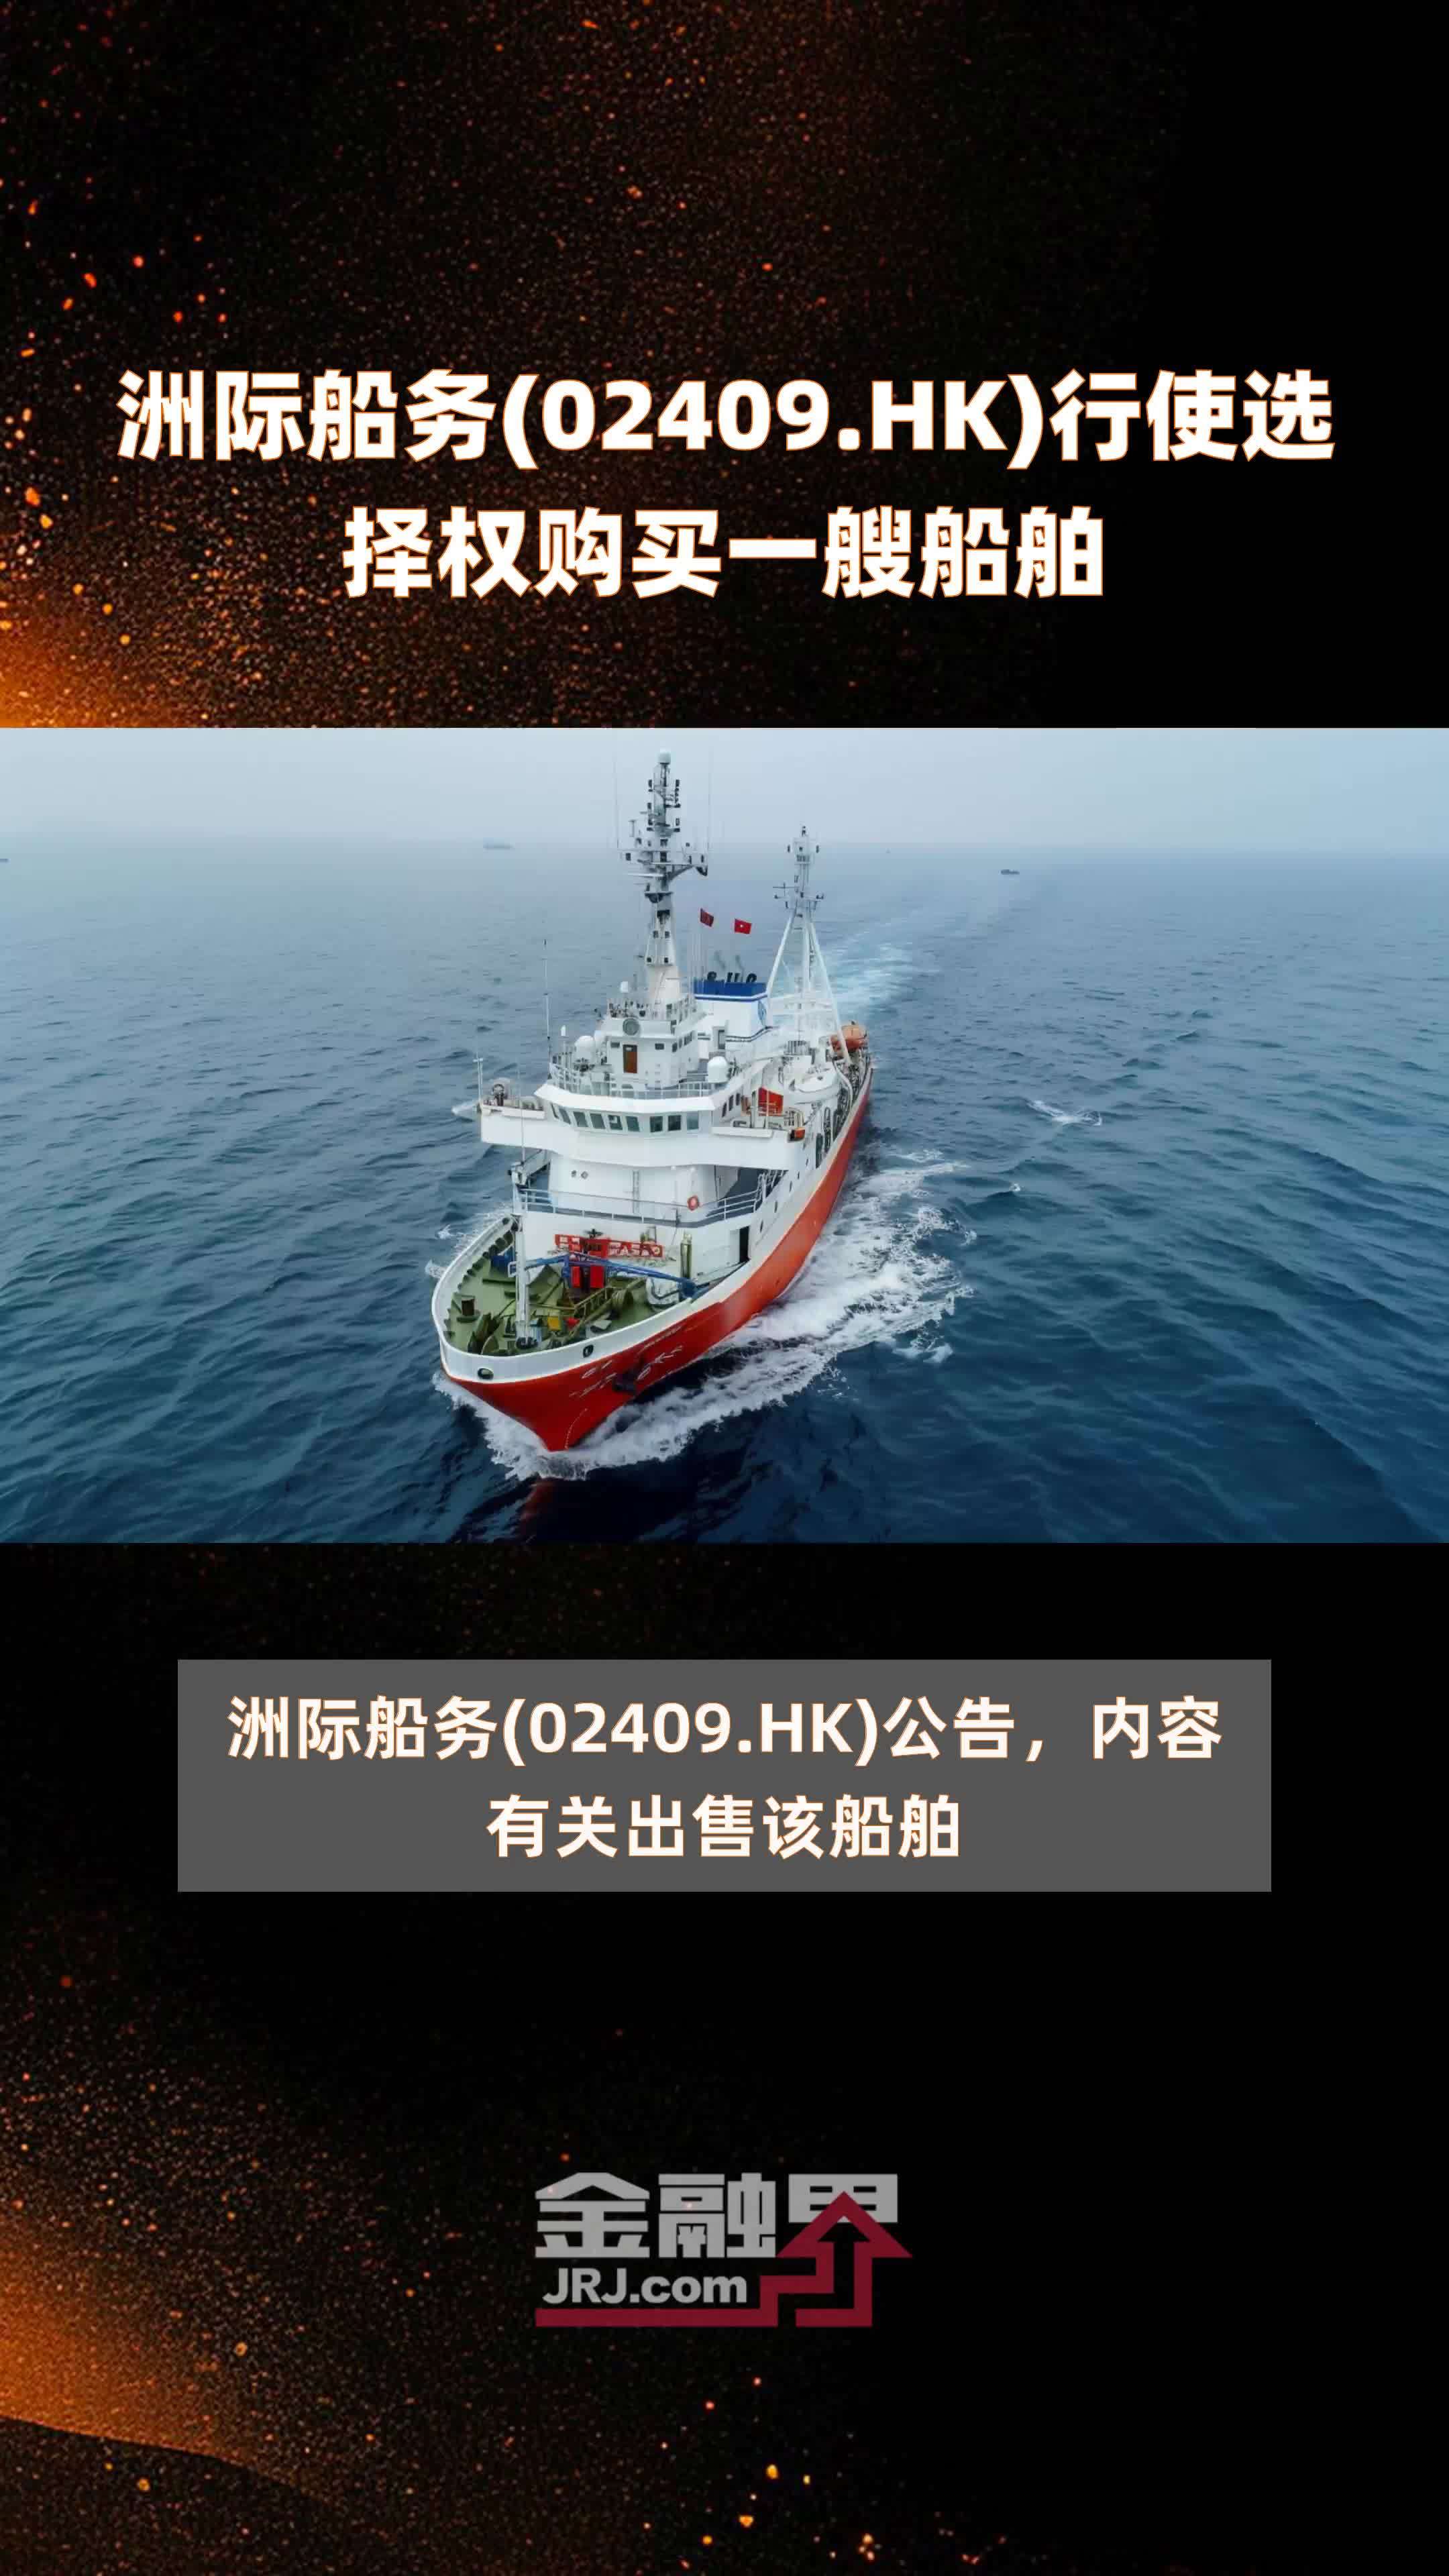 洲际船务(02409.HK)行使选择权购买一艘船舶 |快报